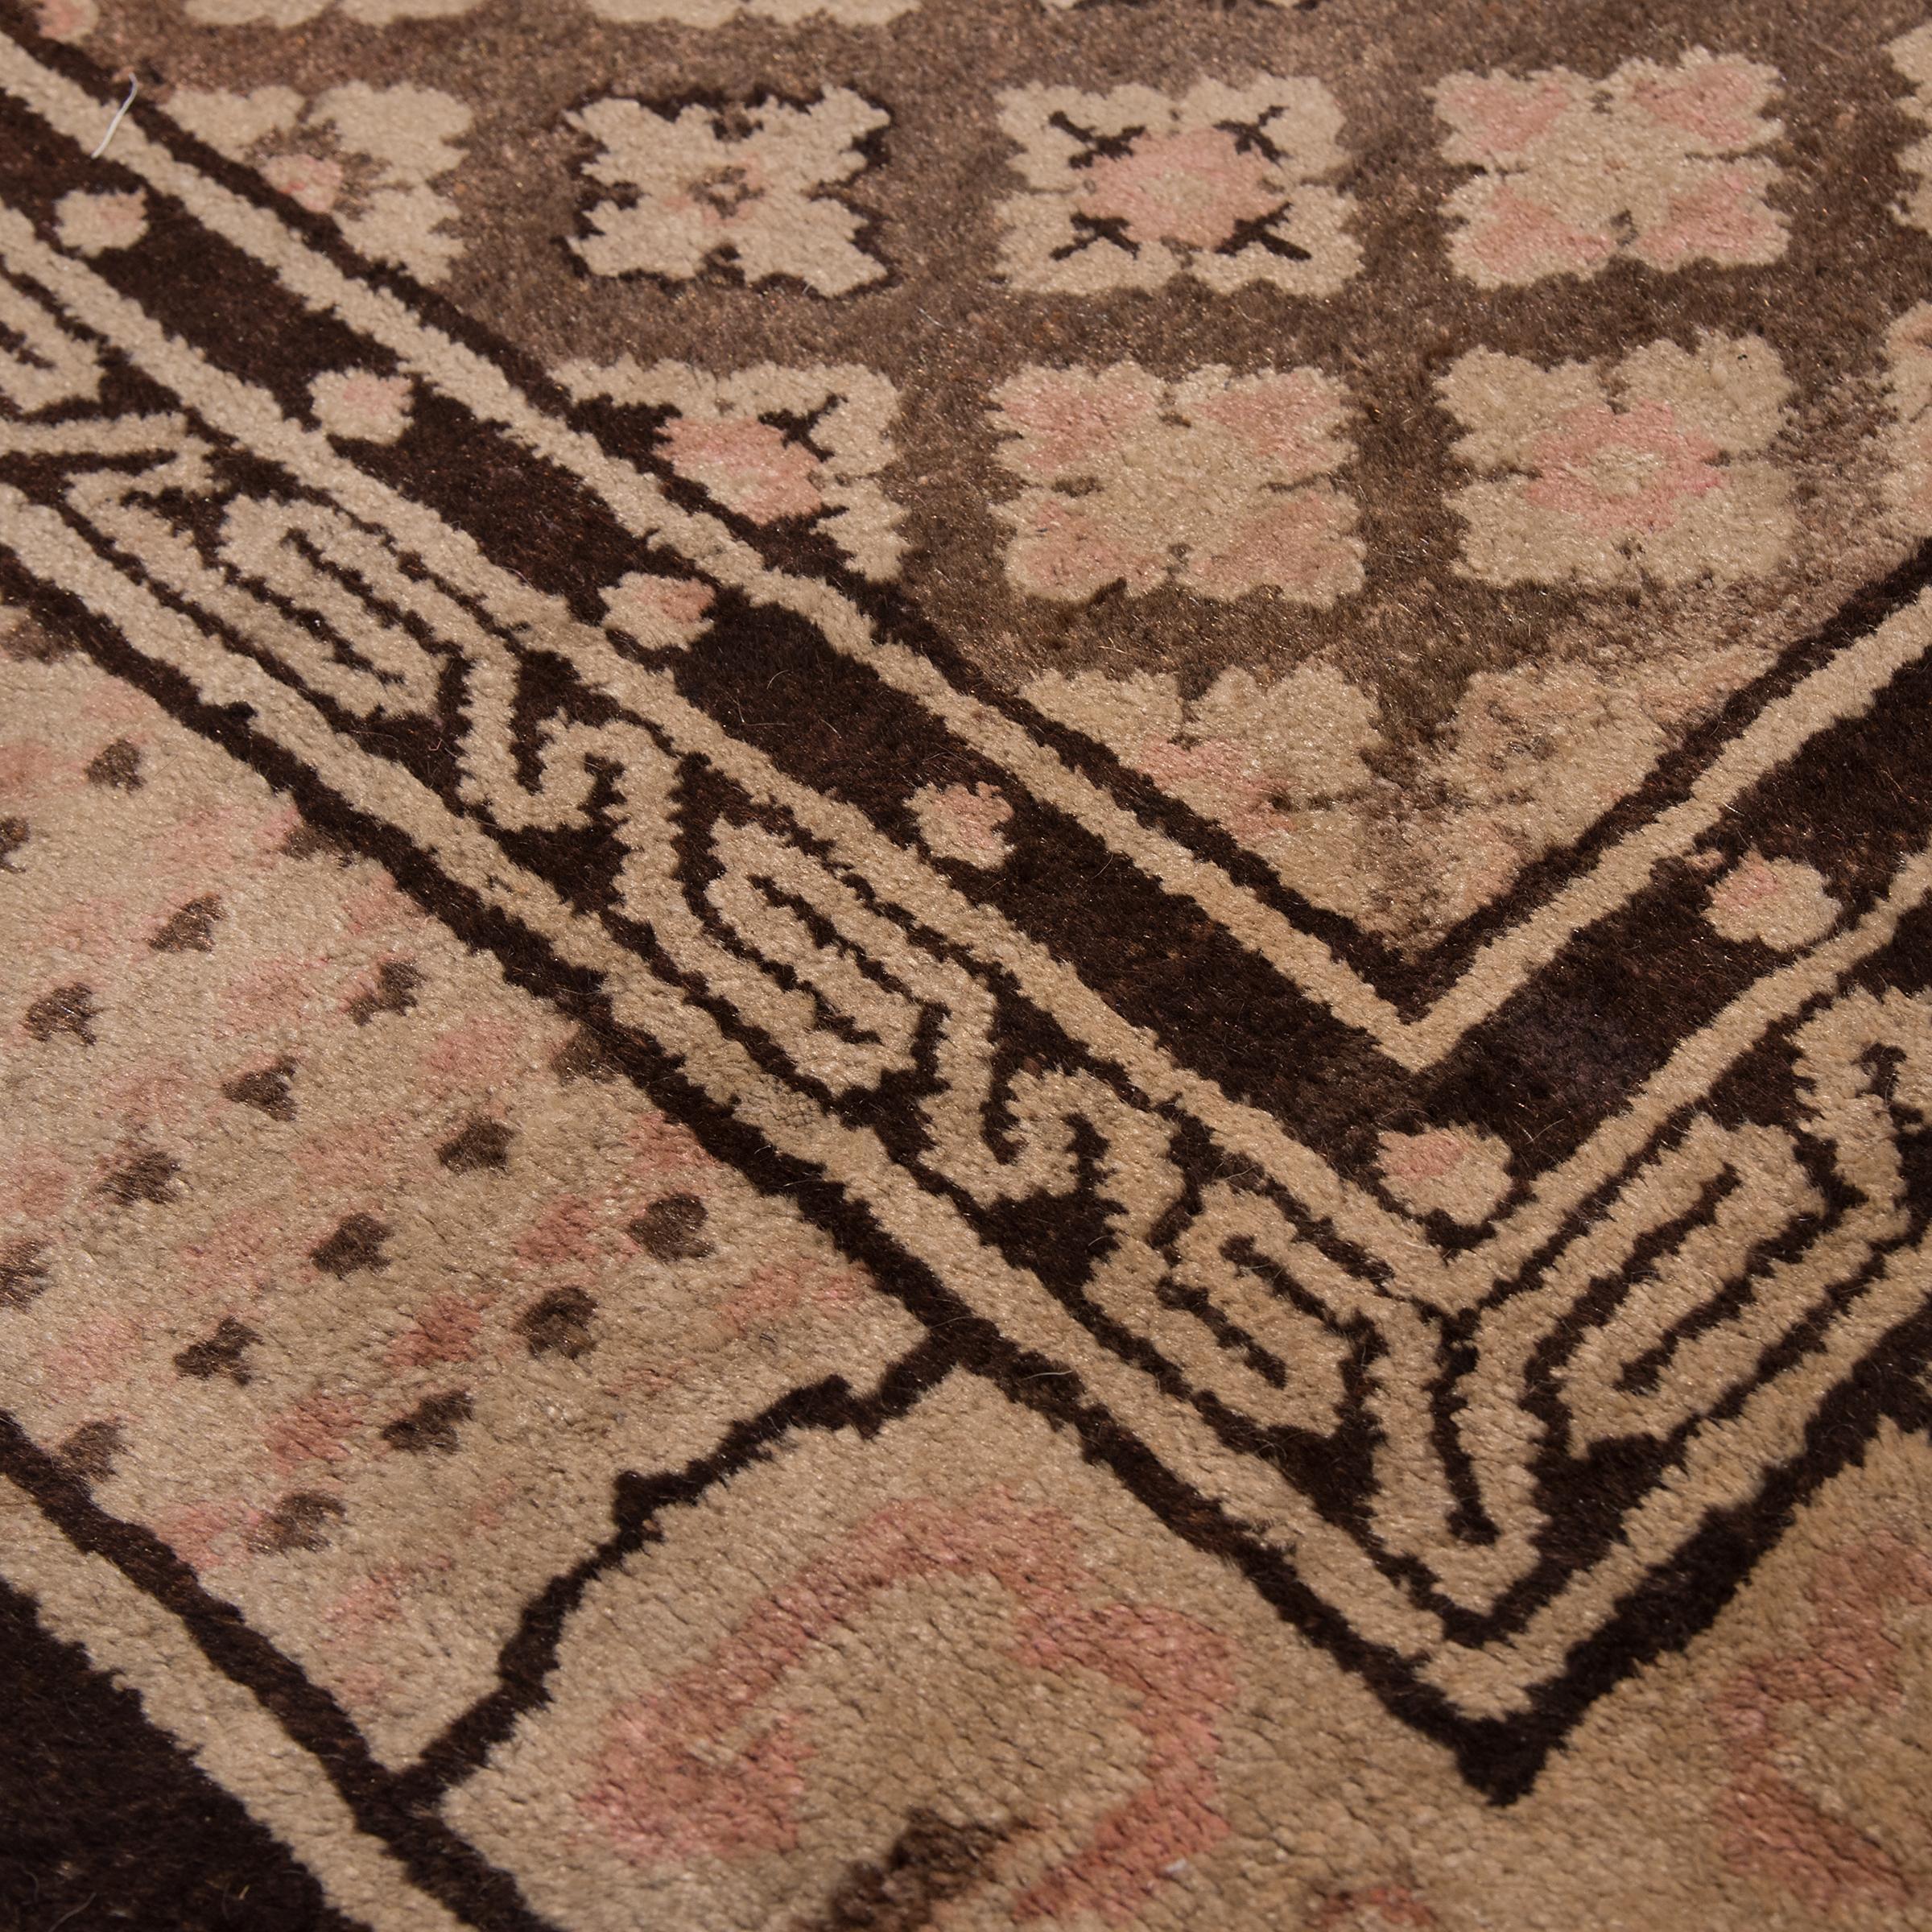 Die Herstellung dieses prächtigen Teppichs dauerte Monate oder sogar Jahre. In mühevoller Kleinarbeit wurden Stücke pflanzlich gefärbter Wolle in Tausenden von Einzelknoten um eine Baumwollkette geknüpft. Das Ergebnis ist eine wahre Liebesmüh, denn